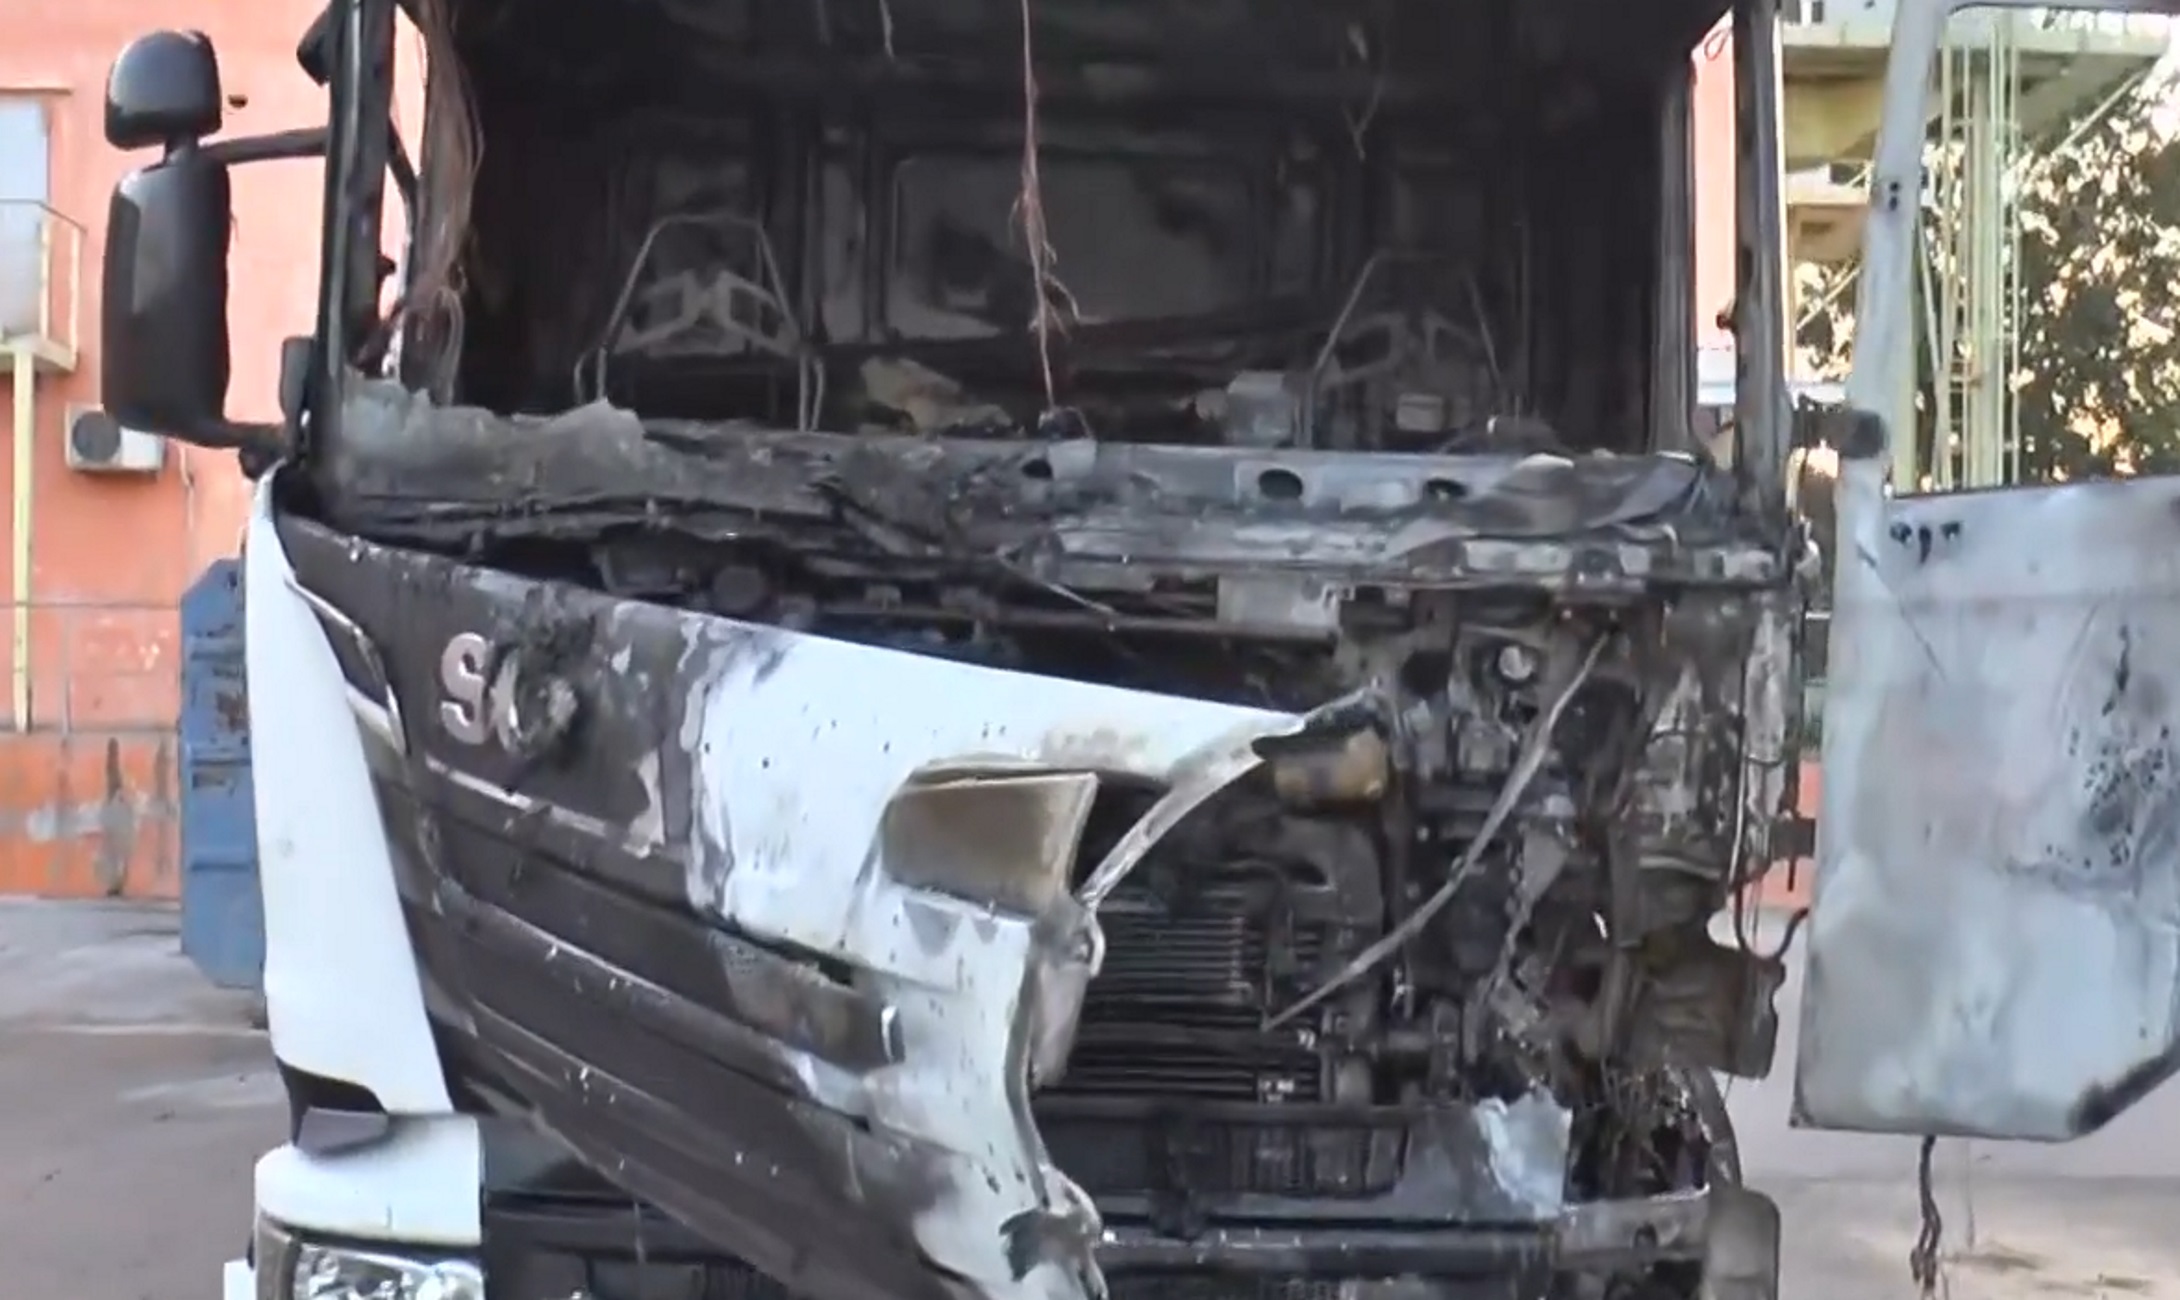 Θεσσαλονίκη: Φωτιά σε φορτηγό έξω από εμπορικό κατάστημα στο Ωραιόκαστρο, με εγκαύματα στα χέρια ο οδηγός